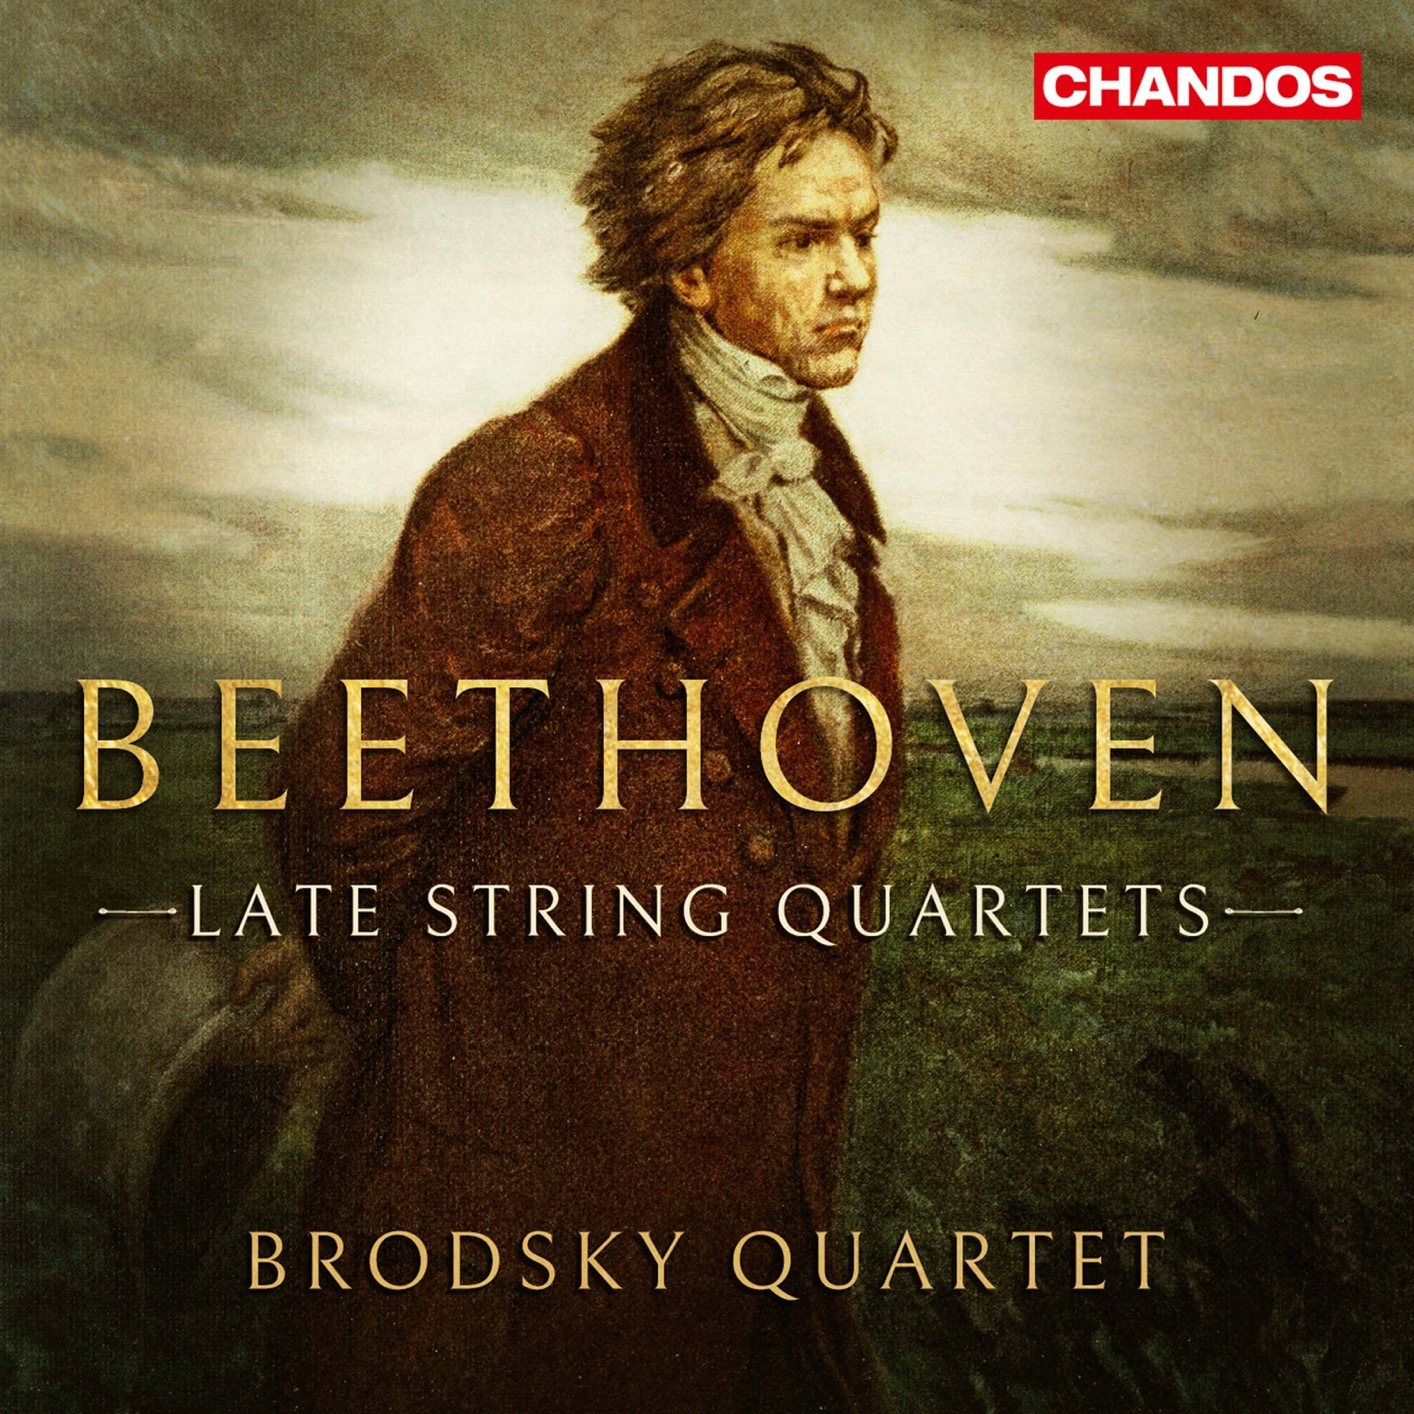 Brodsky Quartet – Beethoven: Late String Quartets (2020) [FLAC 24bit/96kHz]